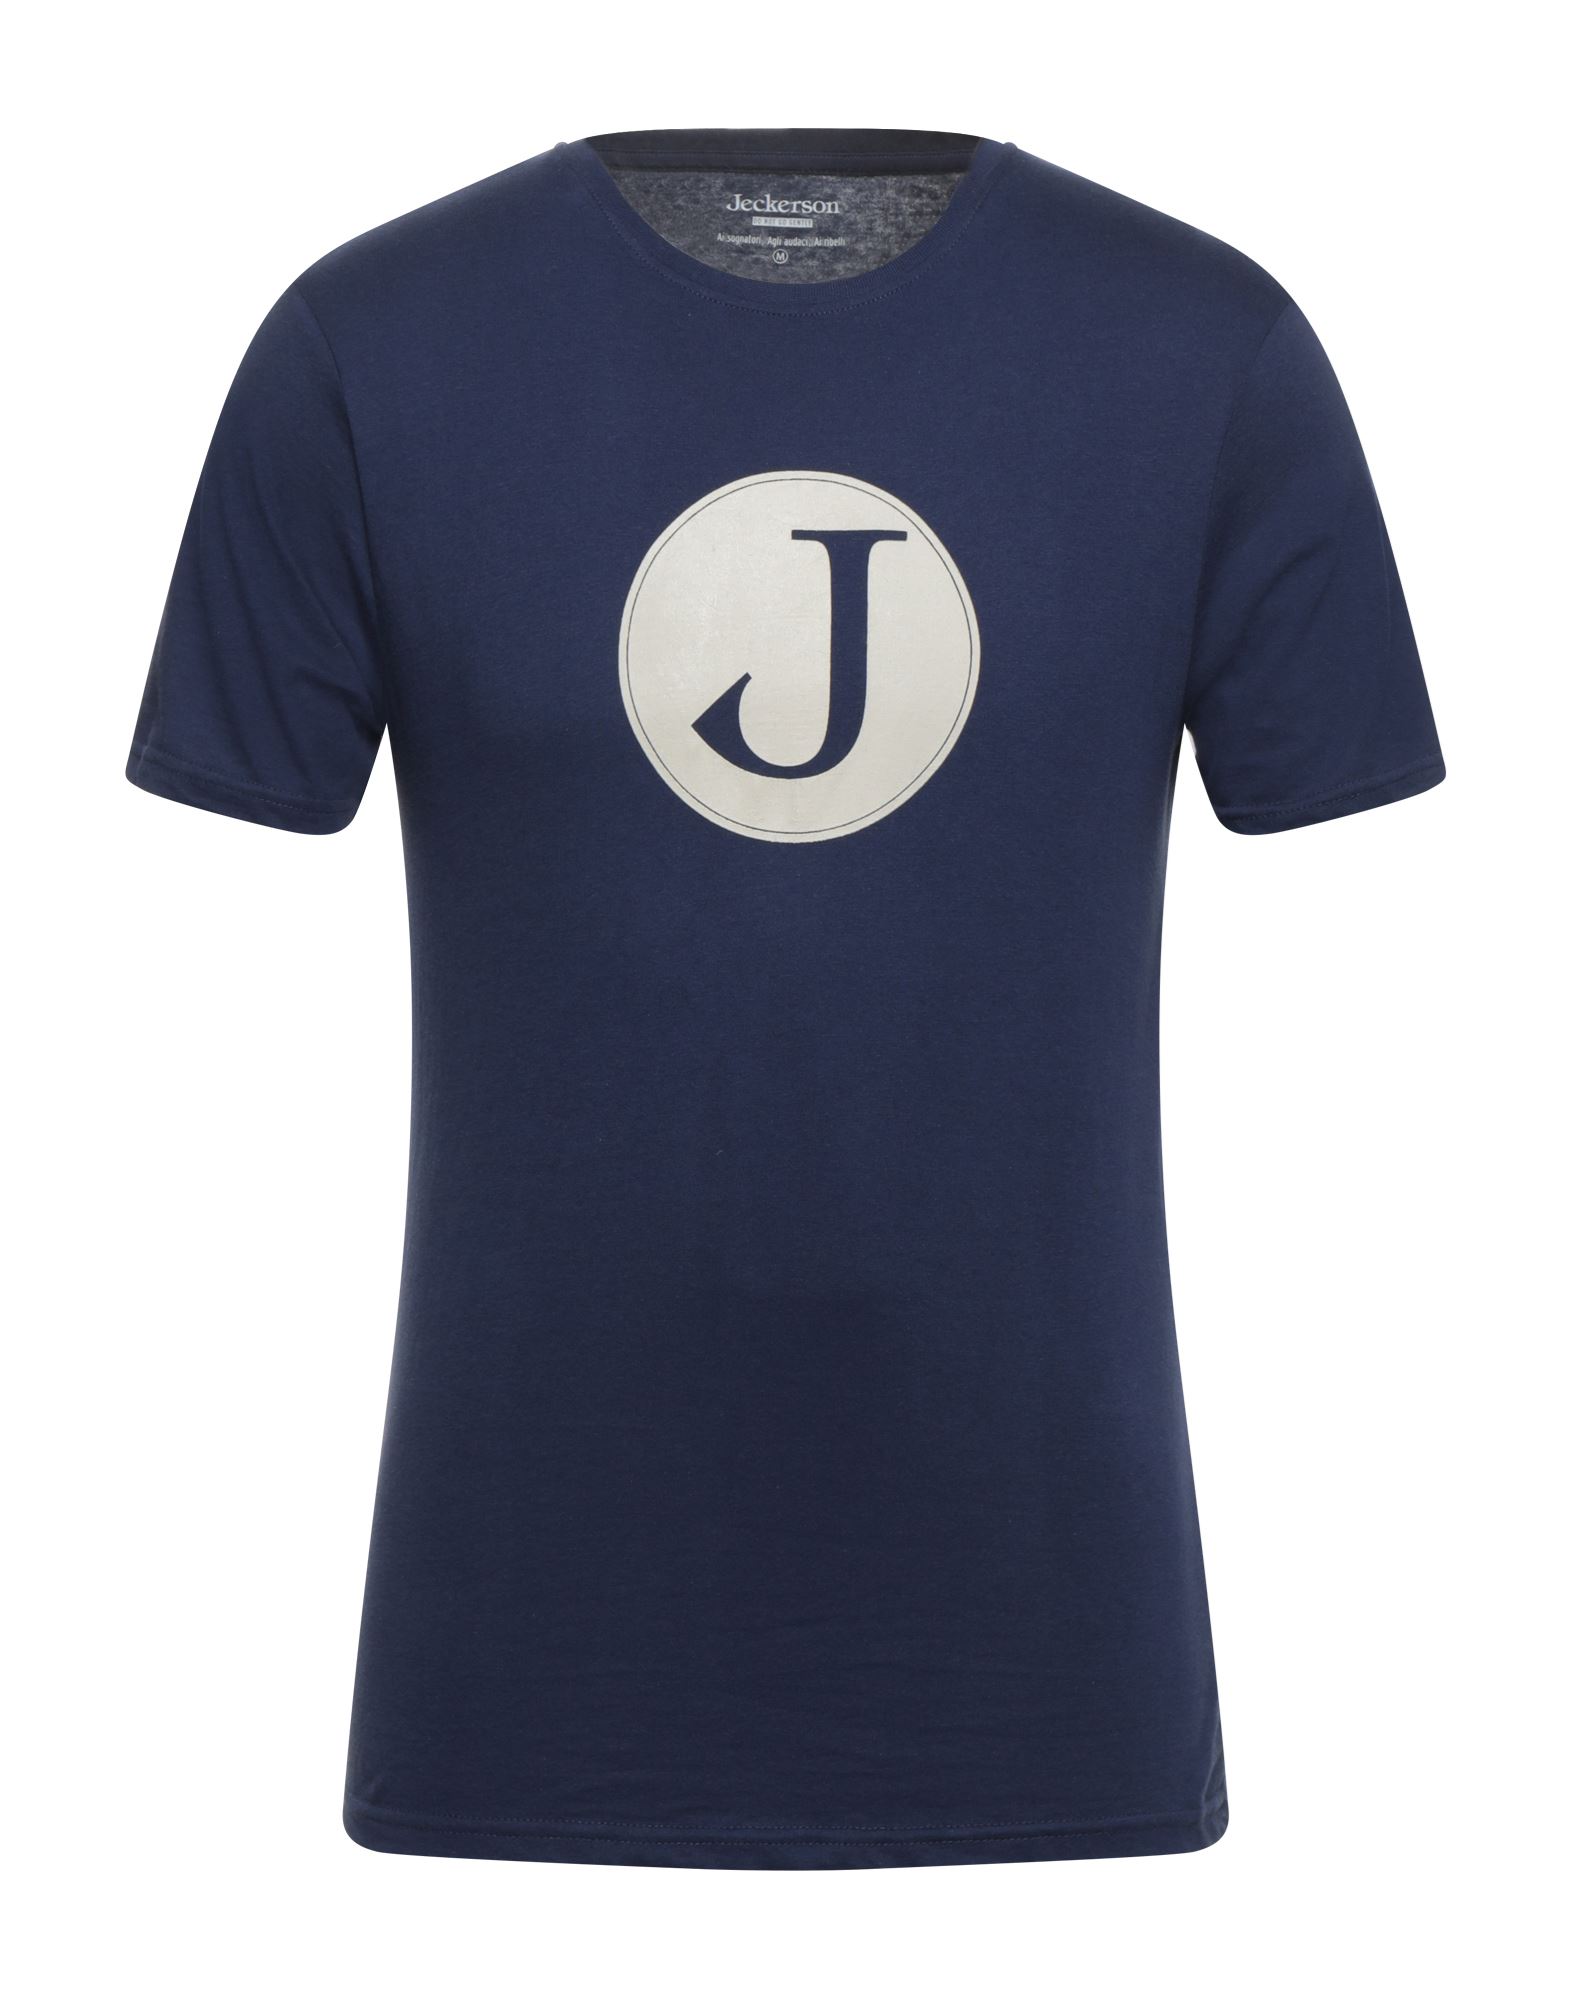 JECKERSON T-shirts Herren Nachtblau von JECKERSON